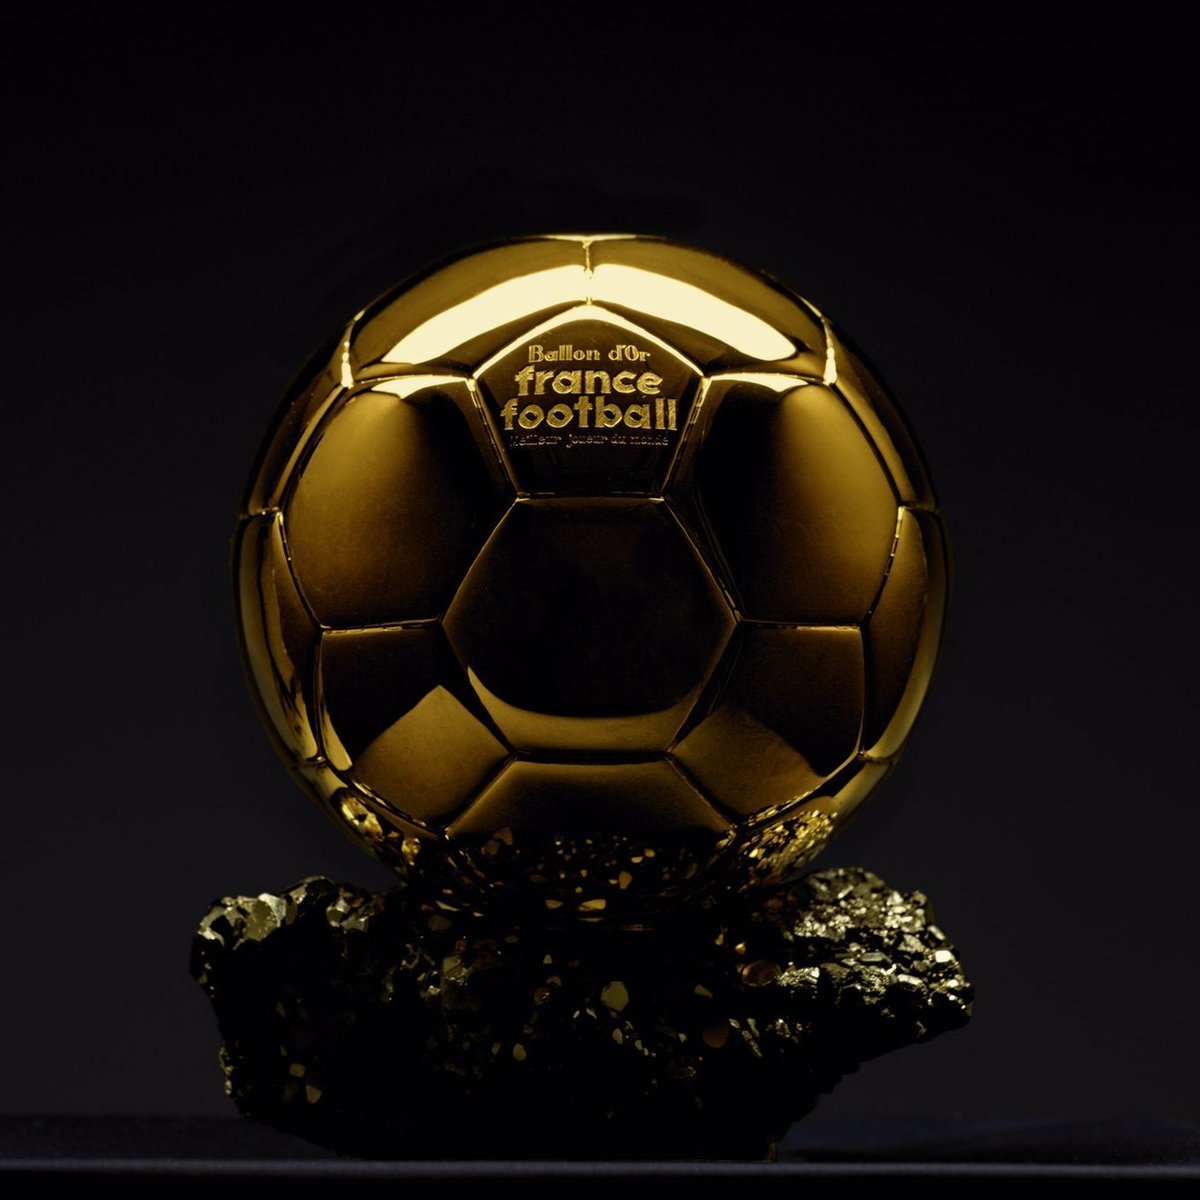 Kylian Mbappé quitte le podium des favoris pour le Ballon d'or 2024, désormais devancé par Harry Kane.

Le Top 10 des bookmakers : 
1️⃣ 🇧🇷 Vinicius Jr
2️⃣ 🏴󠁧󠁢󠁥󠁮󠁧󠁿 Bellingham
3️⃣ 🏴󠁧󠁢󠁥󠁮󠁧󠁿 Kane
4️⃣ 🇫🇷 Mbappé
5️⃣ 🇩🇪 Kroos
6️⃣ 🇩🇪 Wirtz
7️⃣ 🇪🇸 Rodri
8️⃣ 🇦🇷 Messi
9️⃣ 🏴󠁧󠁢󠁥󠁮󠁧󠁿 Foden
🔟 🇳🇴 Haaland

(OddsChecker)